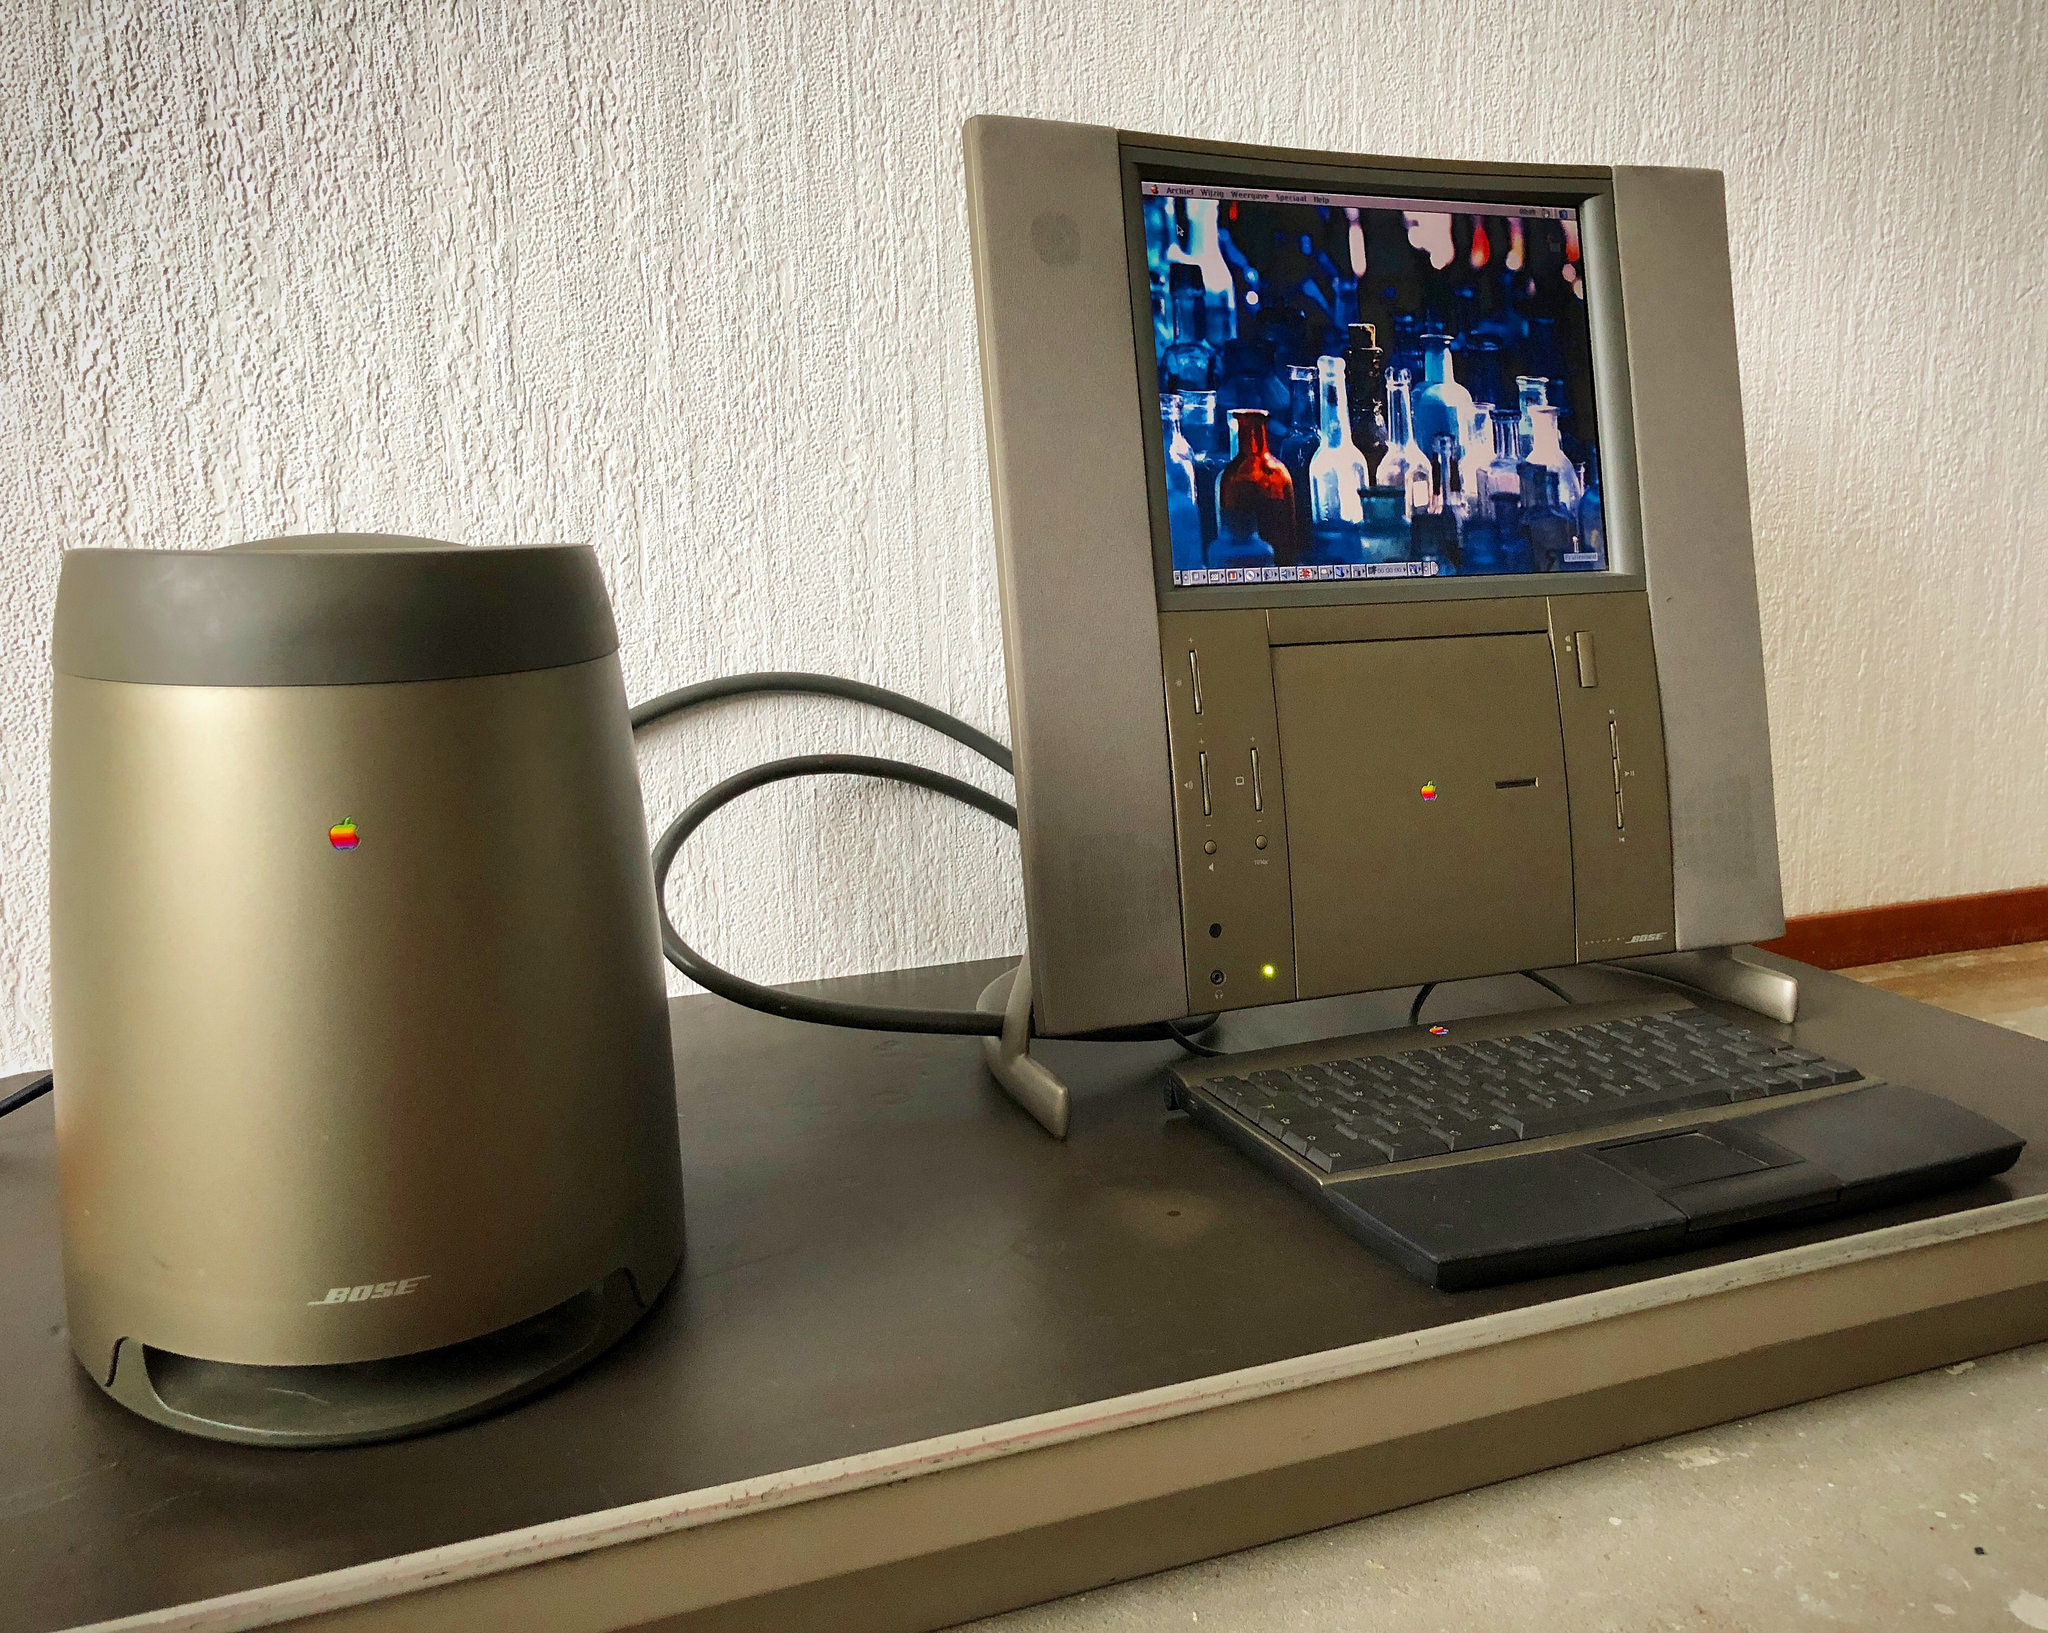 Limitirana, slavljenička edicija Macintosh računala s kojim su htjeli obilježiti 20 godina od prvog proizvedenog Apple kompjutera, sasvim jasno pokazuje koliko je Apple bio izgubljen bez Steve Jobsa. Naime, Jobs je Apple napustio u rujnu 1985. godine, a vratio se nakon Appleove blamaže s 20th Anniversary Macintosh 1997. godine. Pomalo ironično, ovaj je dizajnirao <b>Jony Ive</b>, jedan od ključnih Appleovih dizajnera u povijesti koji je postigao ogromne uspjehe nakon Jobsovog povratka u Apple.